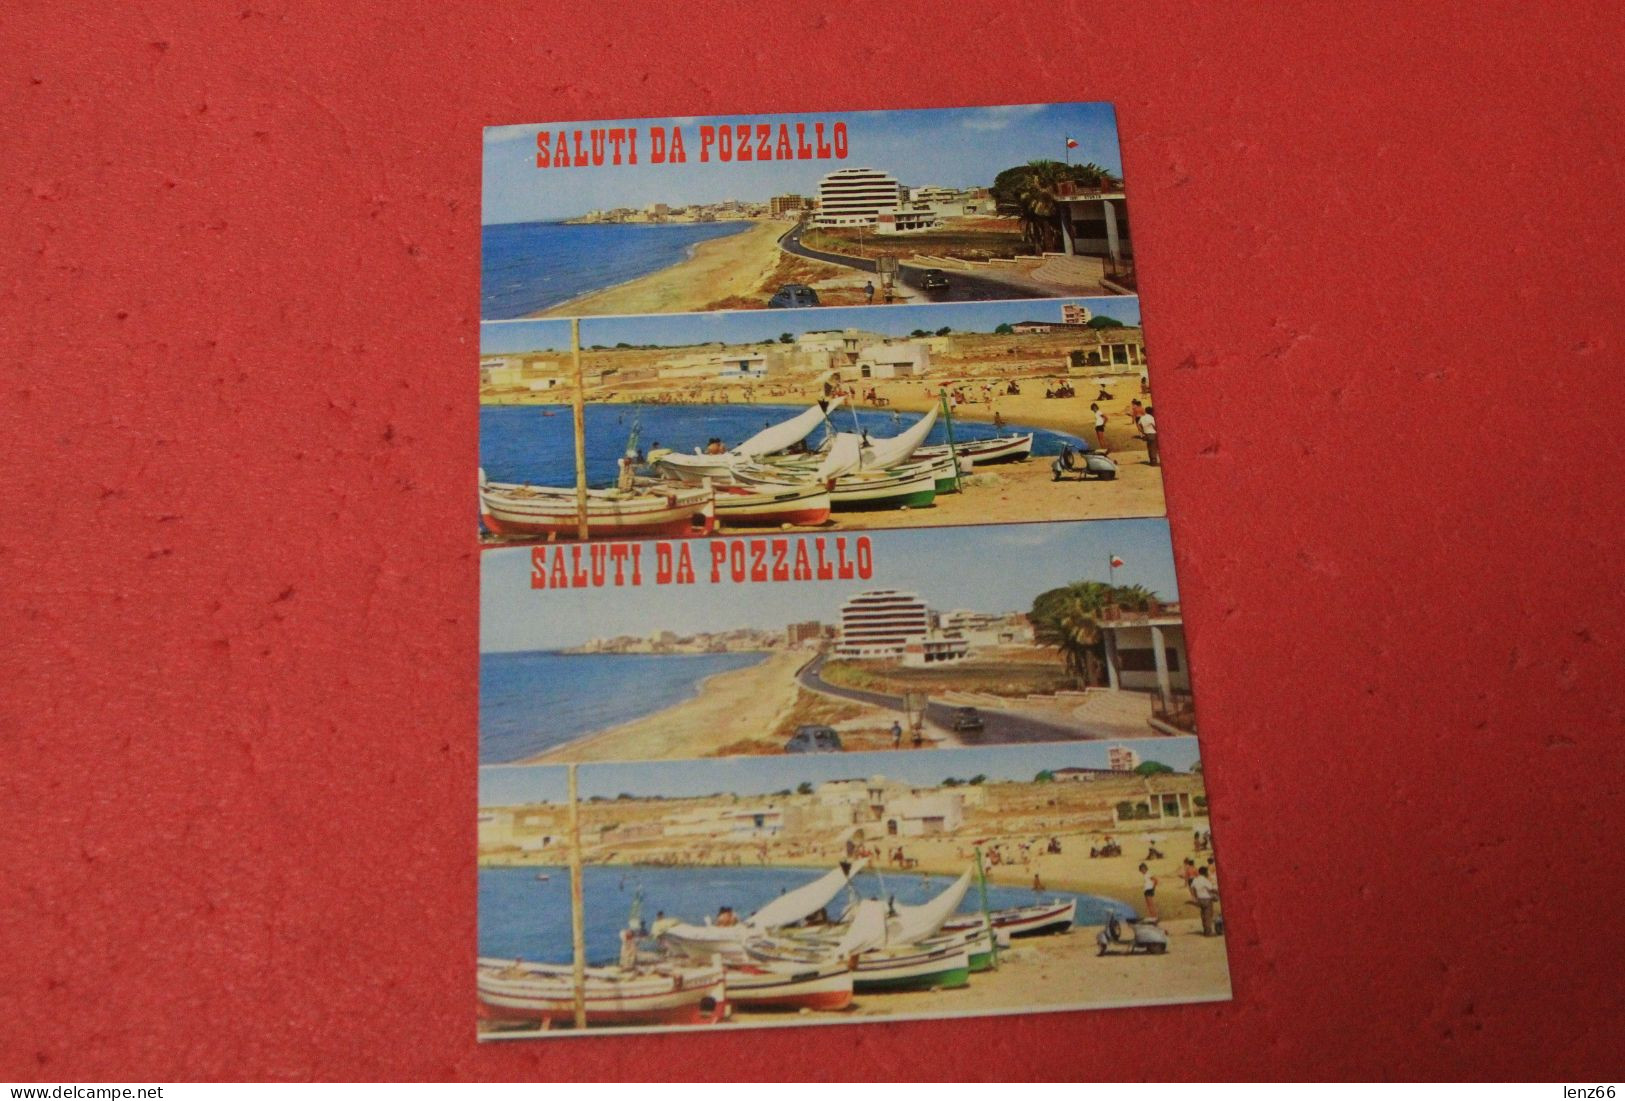 Ragusa Pozzallo 2 Cartoline Di Vedute Anni 75 Viaggiate - Ragusa